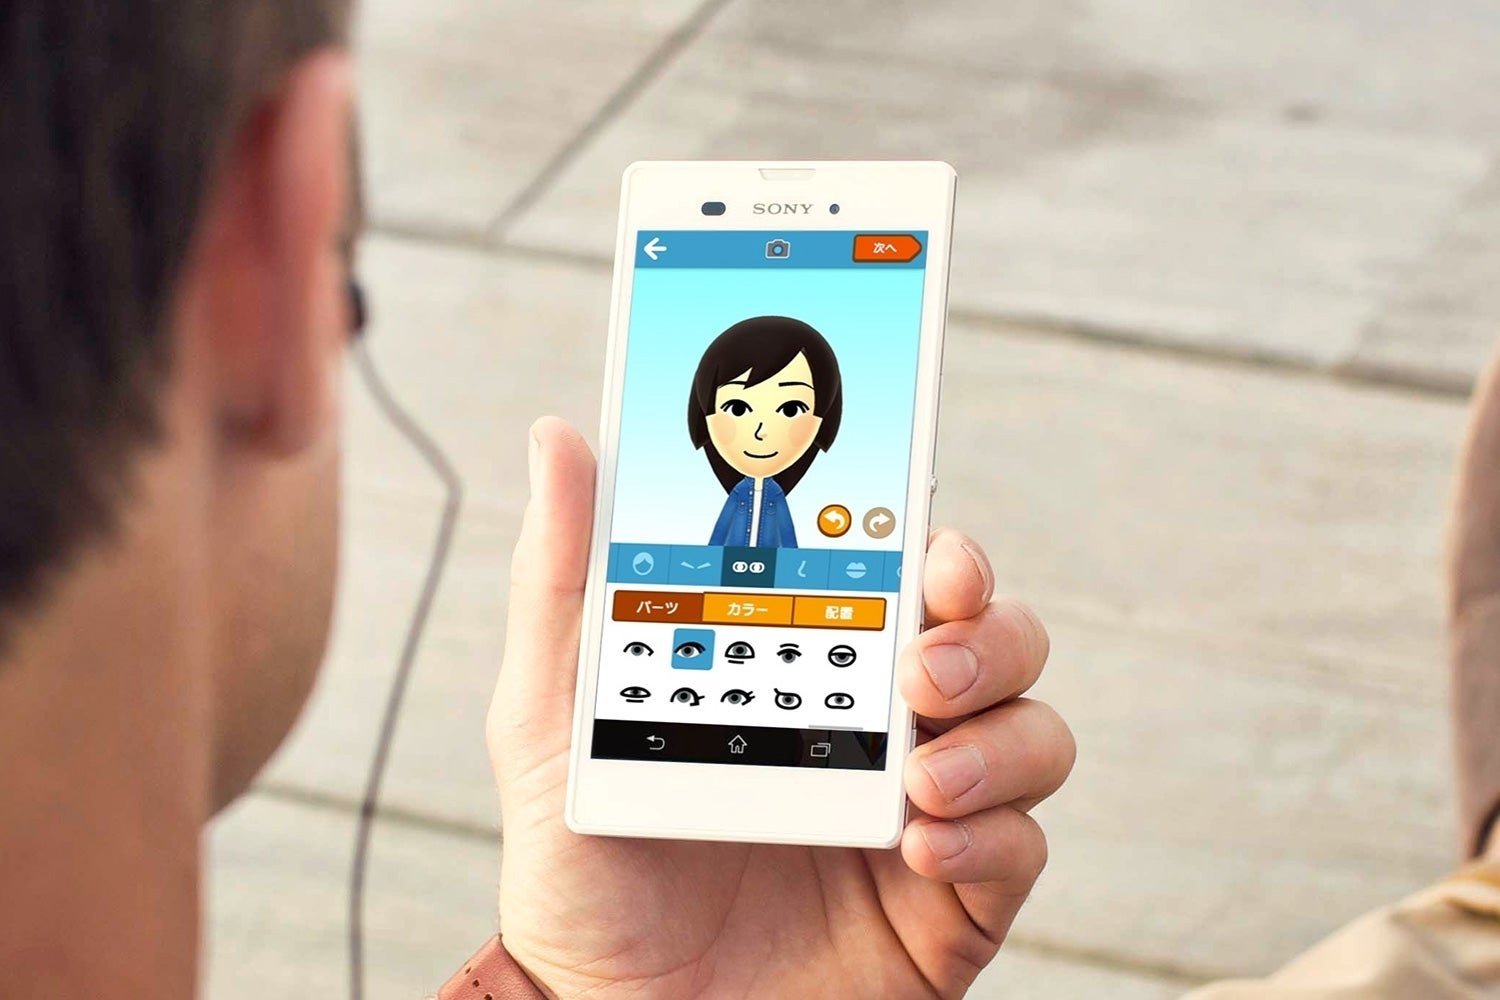 Miitomo: Crea tu Mii e interactúa con otros en la primera app de Nintendo para móviles